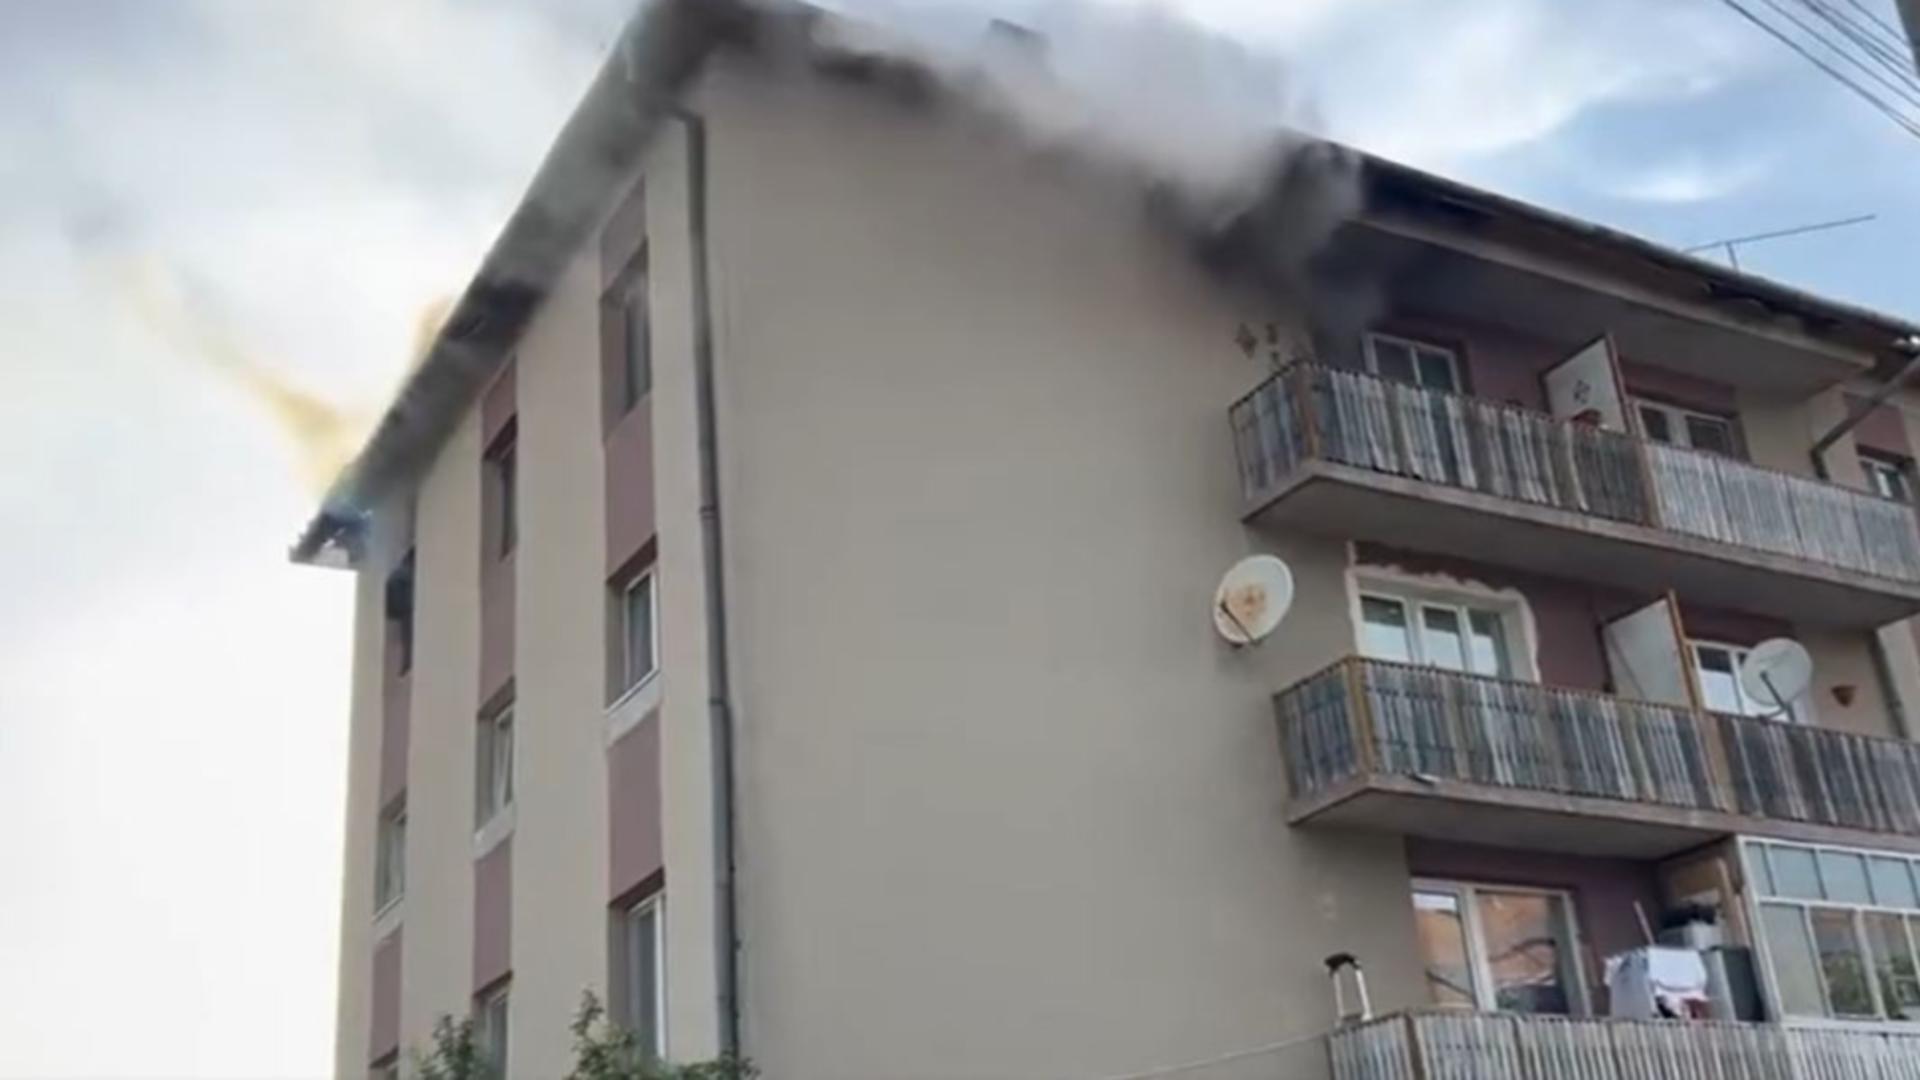 Un bărbat de 60 de ani a fost găsit în apartamentul incendiat, cu arsuri. Foto/Captură video